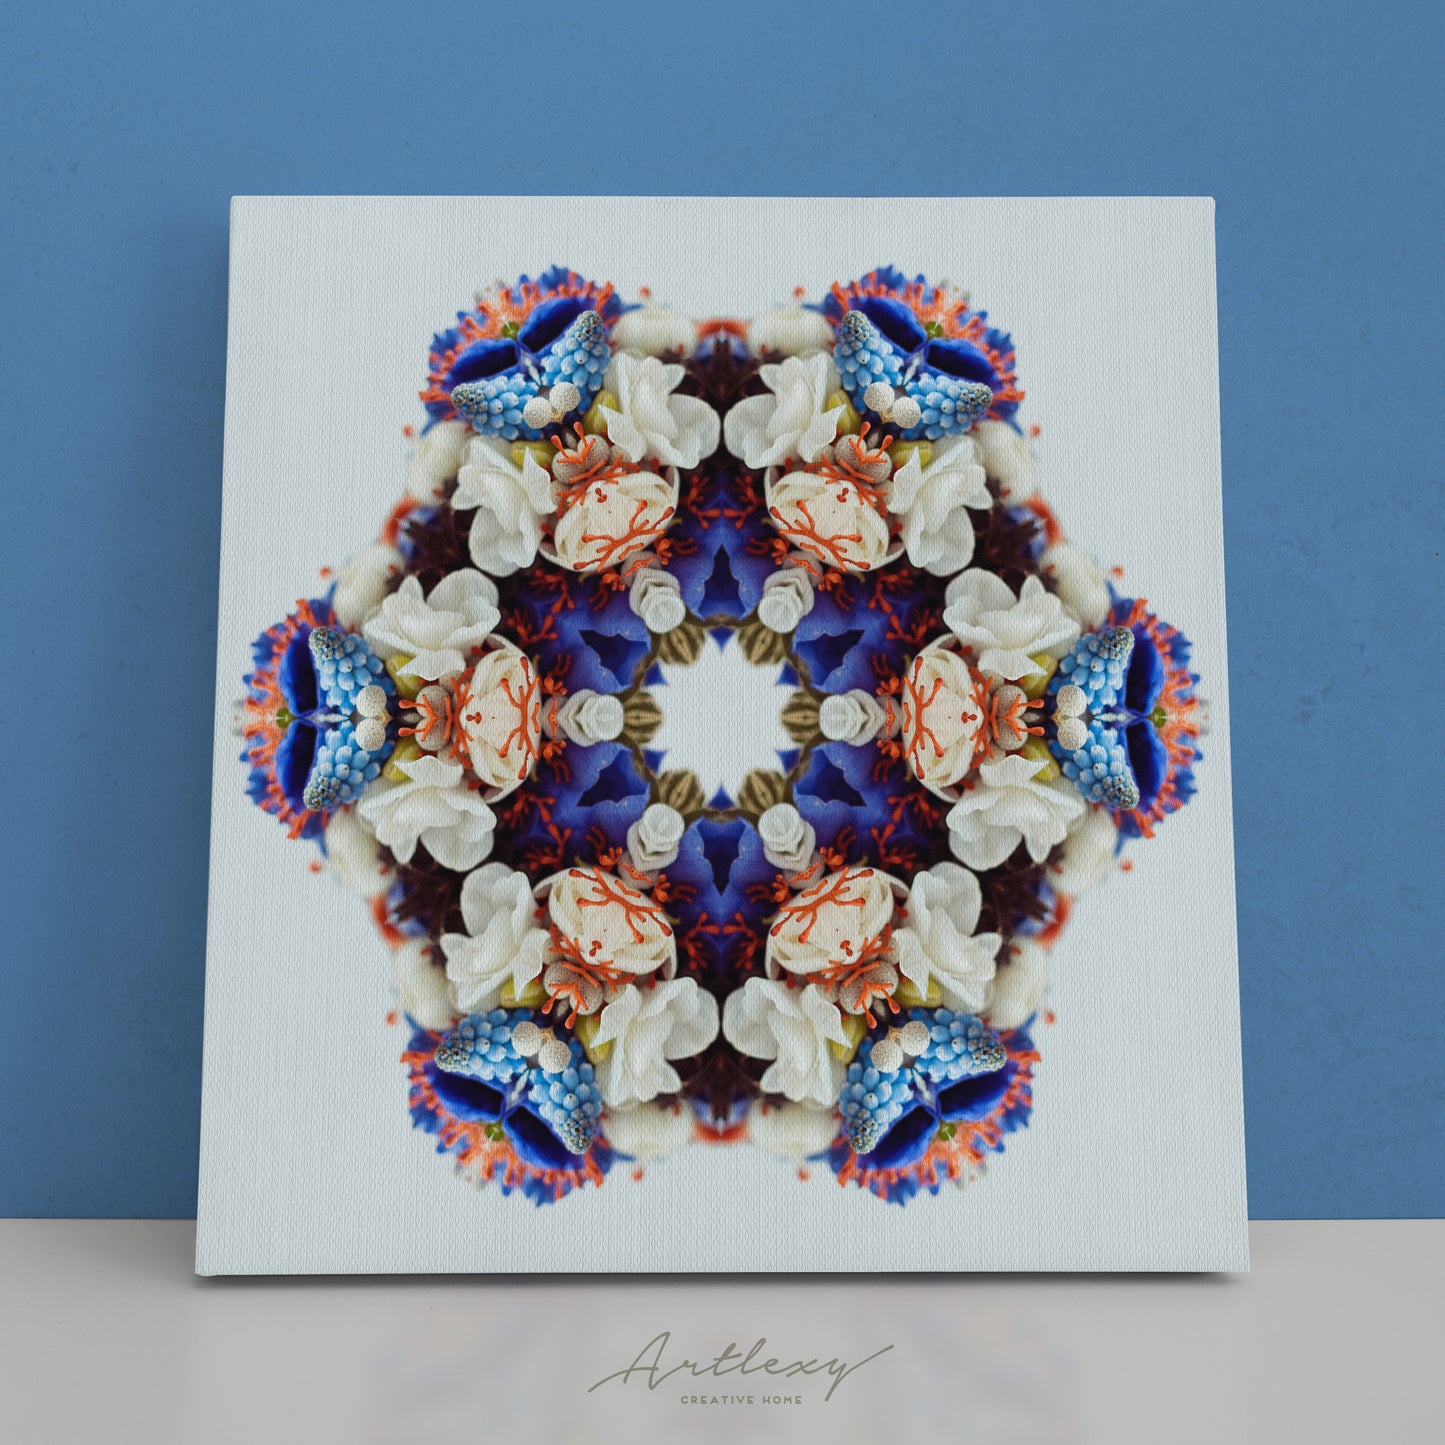 Abstract Flower Kaleidoscope Canvas Print ArtLexy   